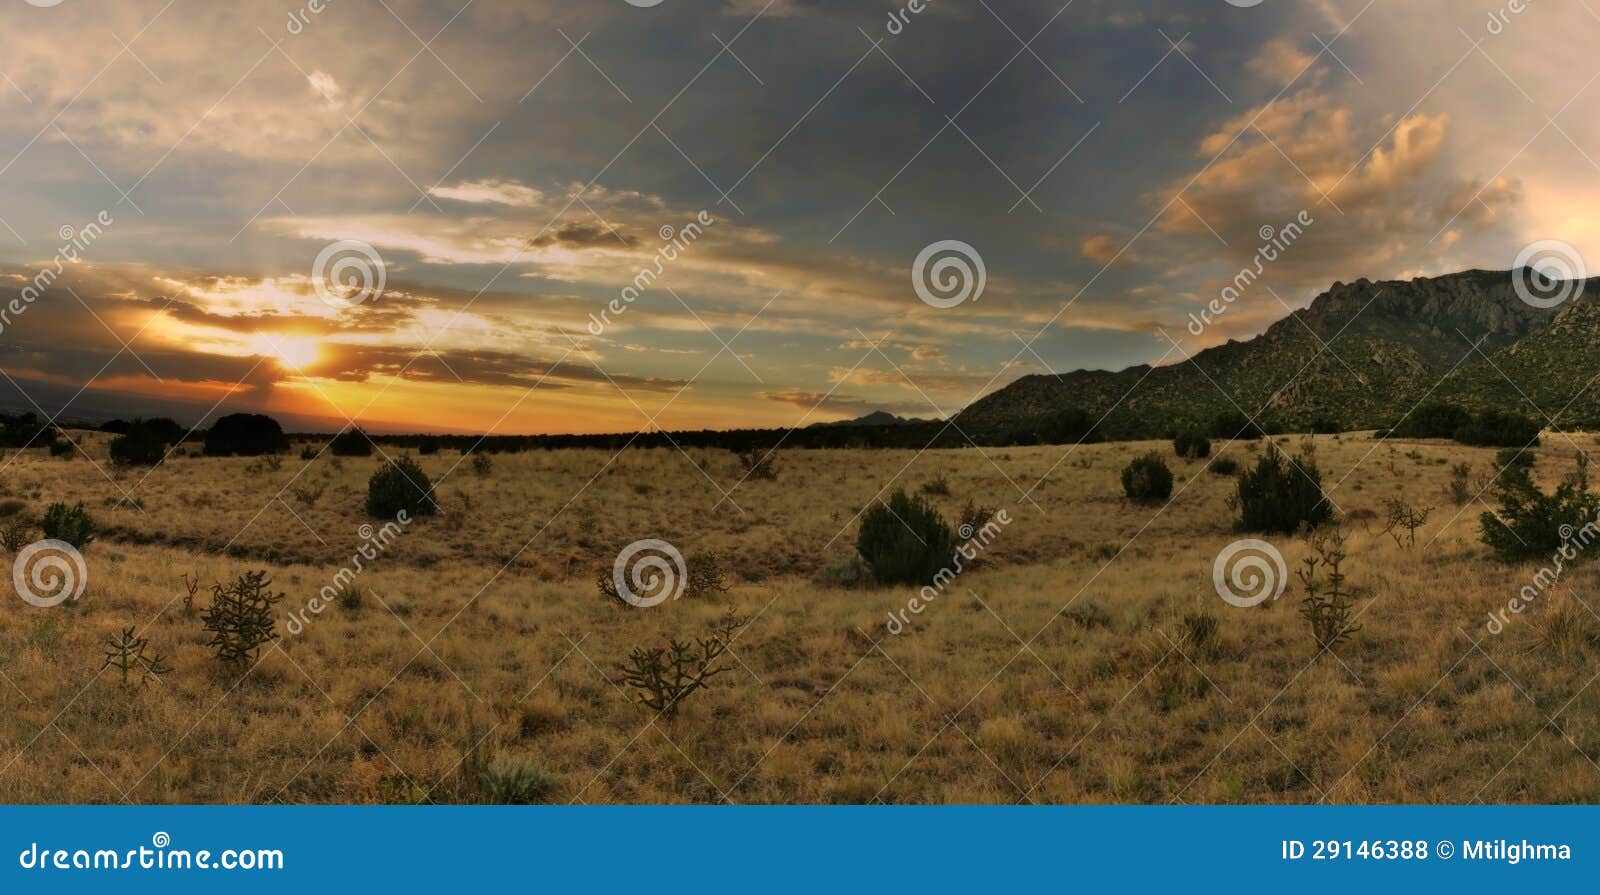 stunning desert sunset